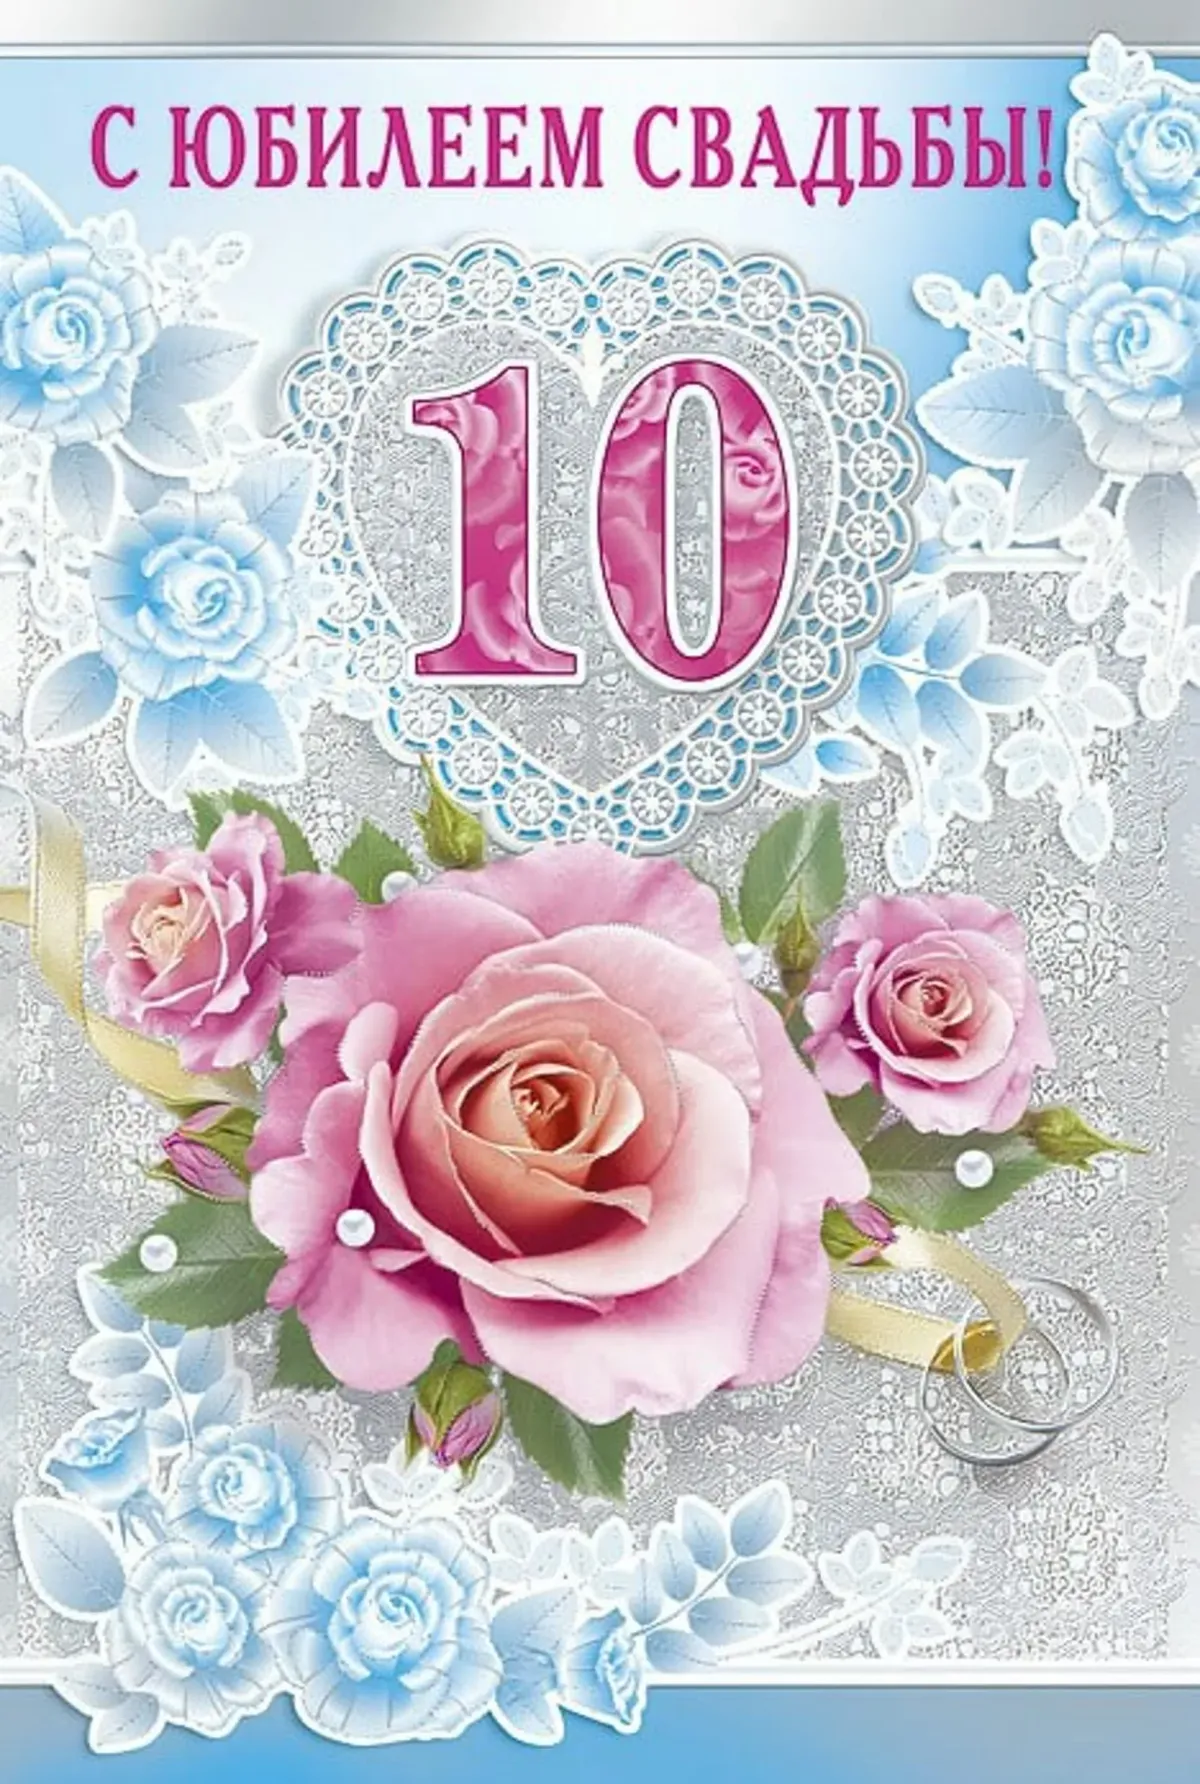 Картинки годовщиной свадьбы 10. 10 Лет свадьбы. 10 Лет свадьбы поздравления. С юбилеем свадьбы 10 лет. Розовая свадьба.